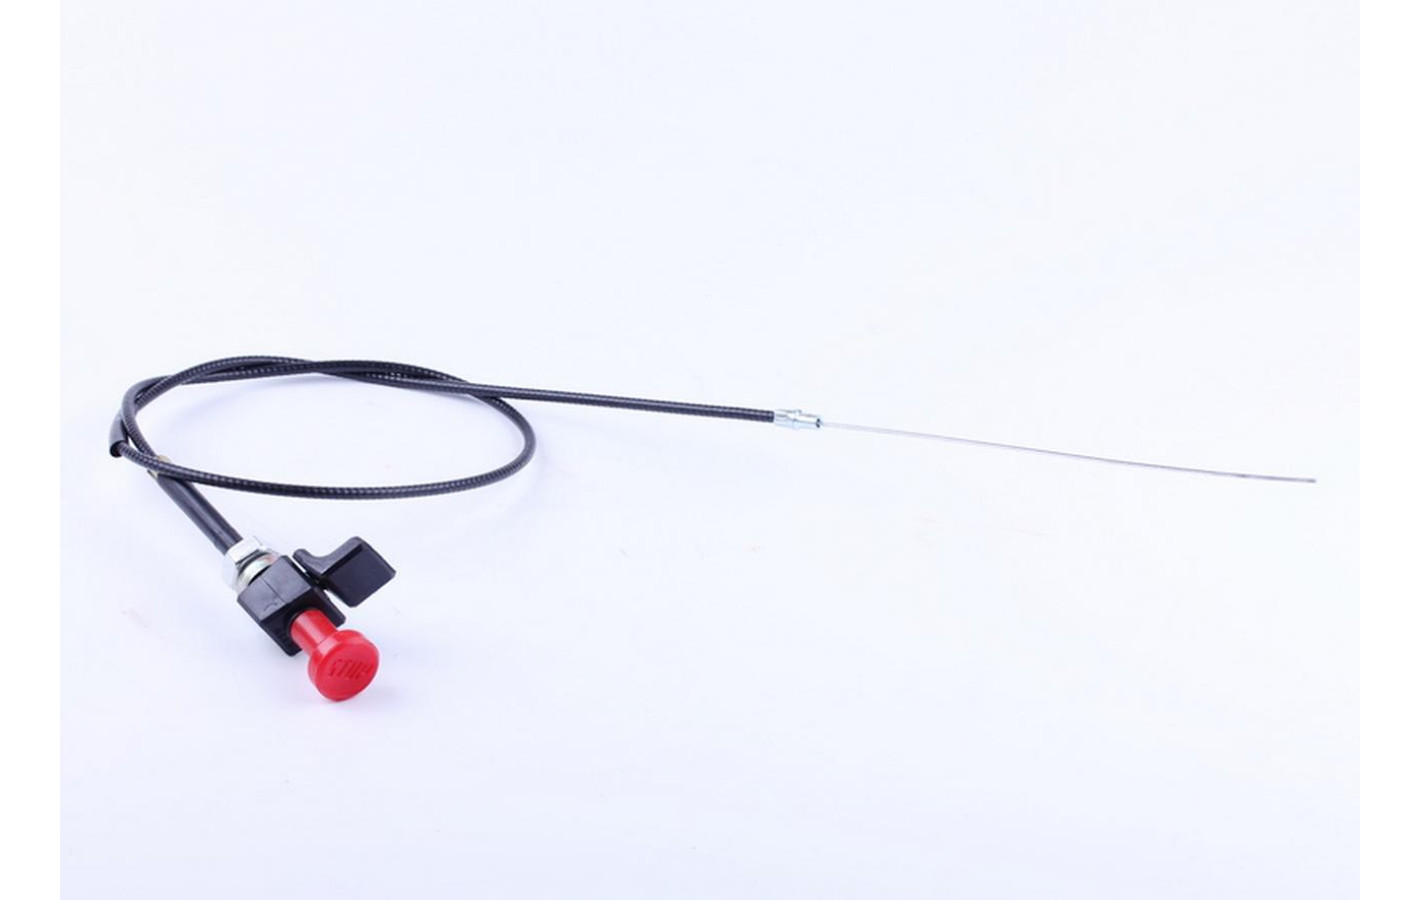 Декомпрессорлық кабель жинағы L-1140 мм Foton 354/404